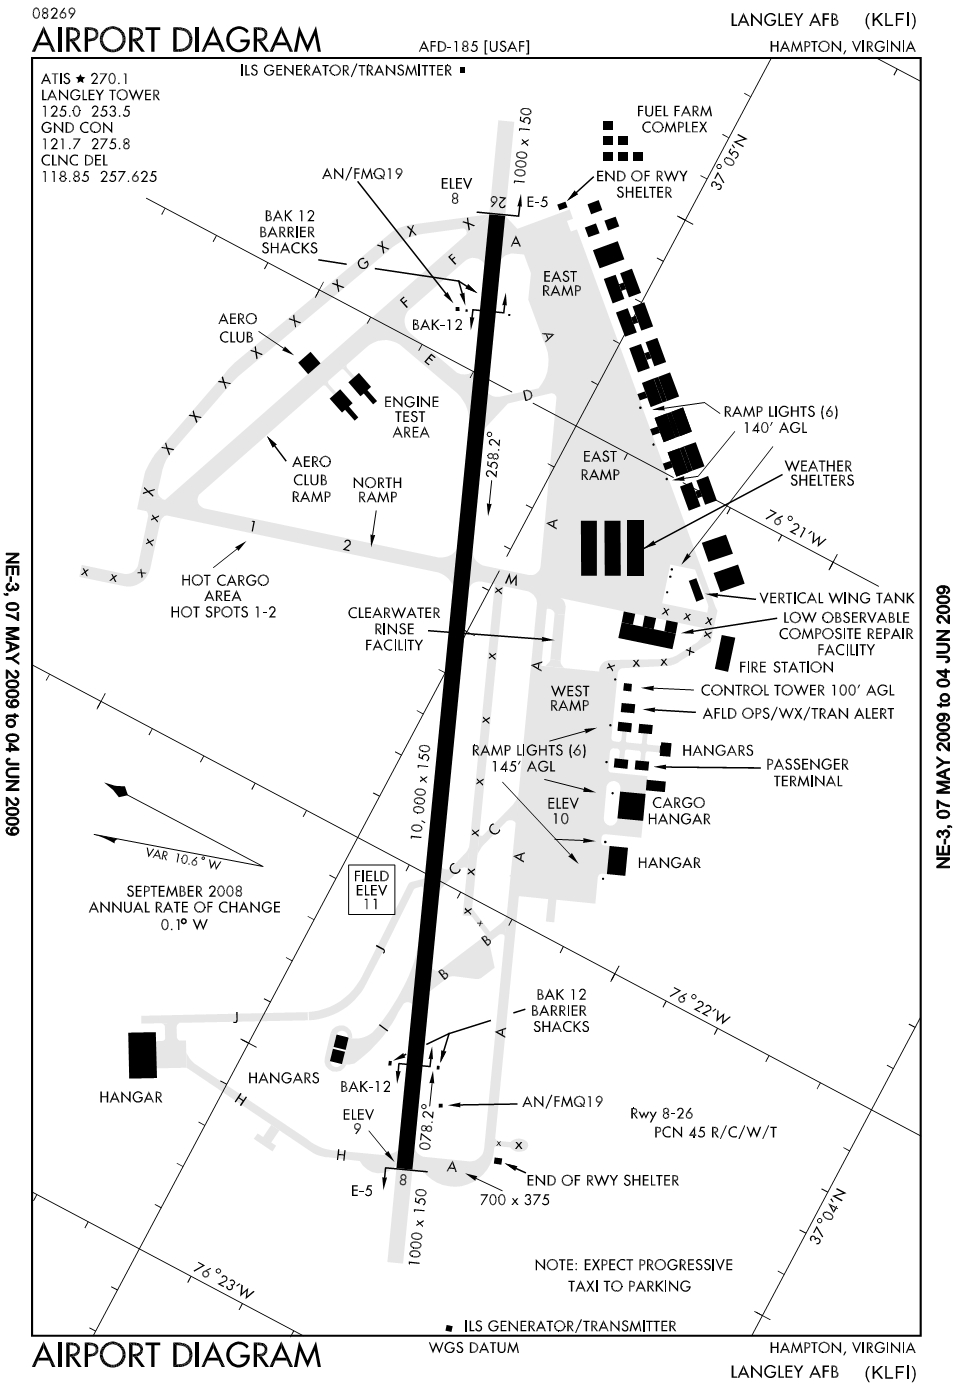 蘭利空軍基地機場航圖